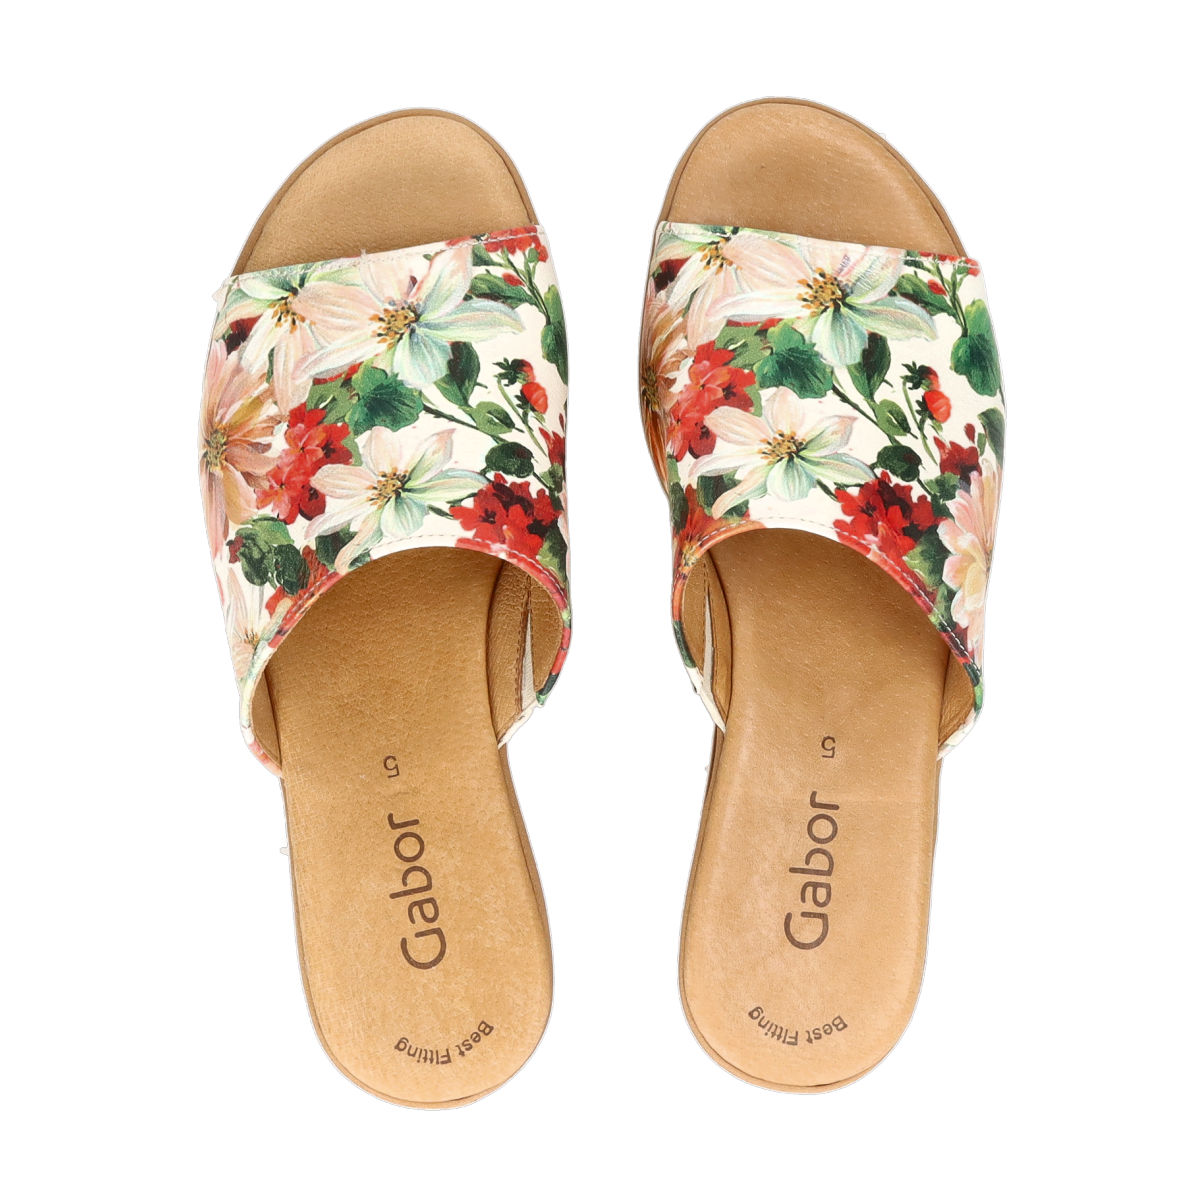 Skjult flåde Milestone Gabor women's leather slippers - multi/coloured | Robel.shoes